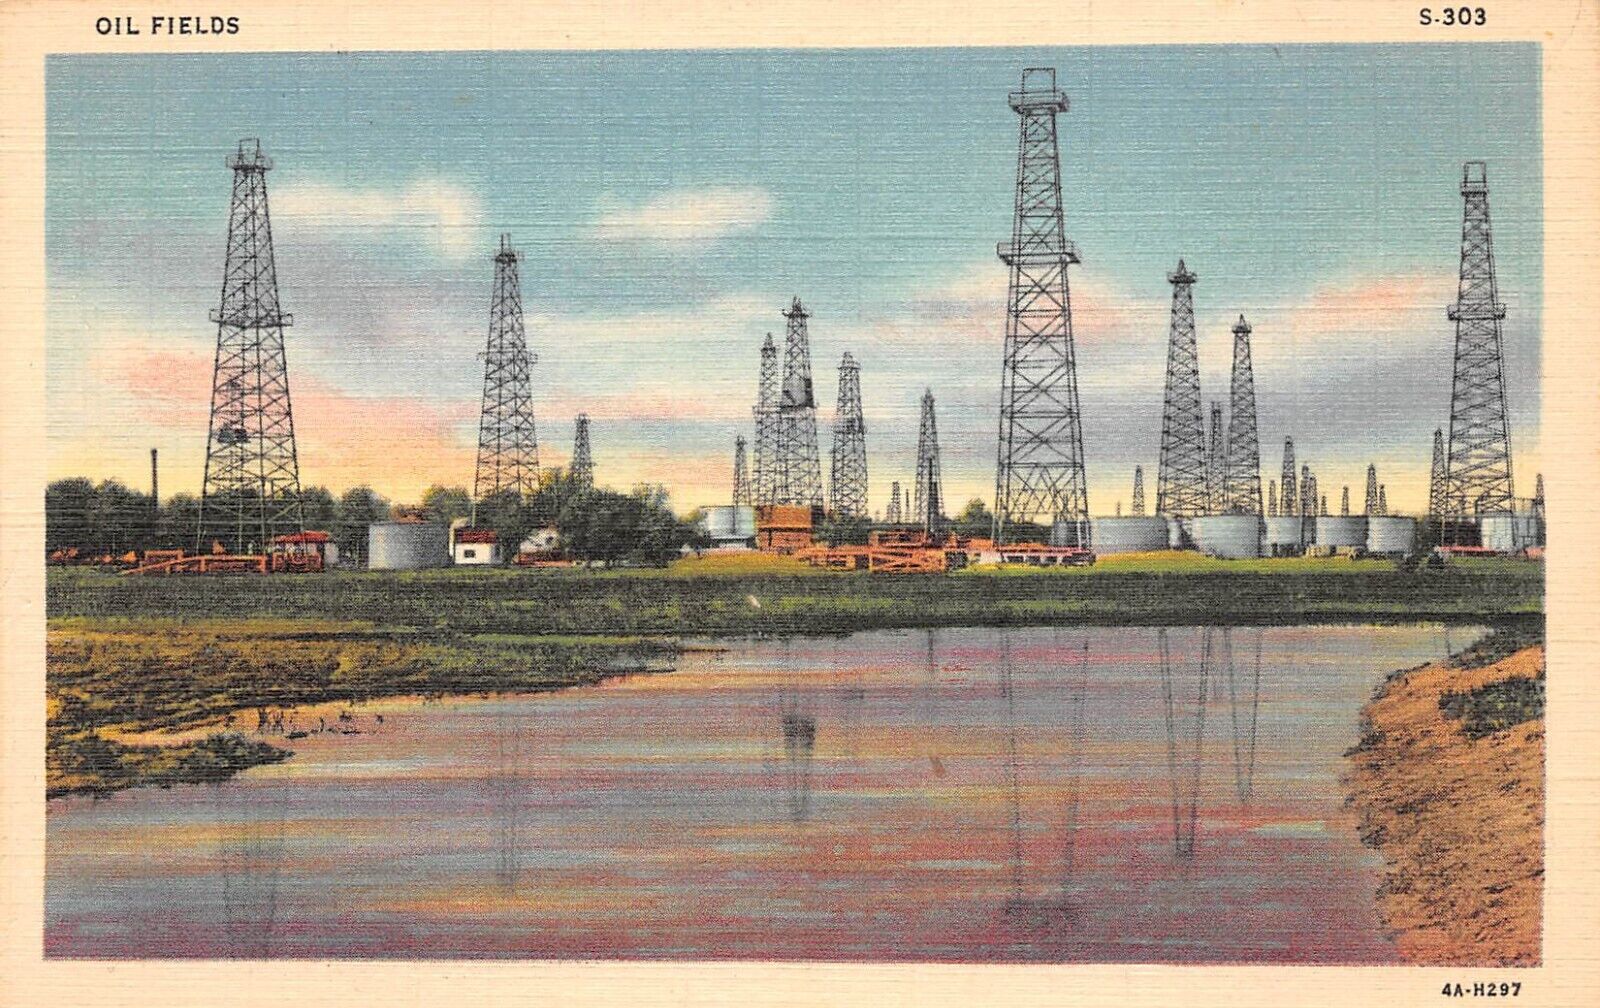 D2108 Oil Fields, 1 of 10 C. T. Oil Field Scenes S-303 - 1934 Teich Linen PC